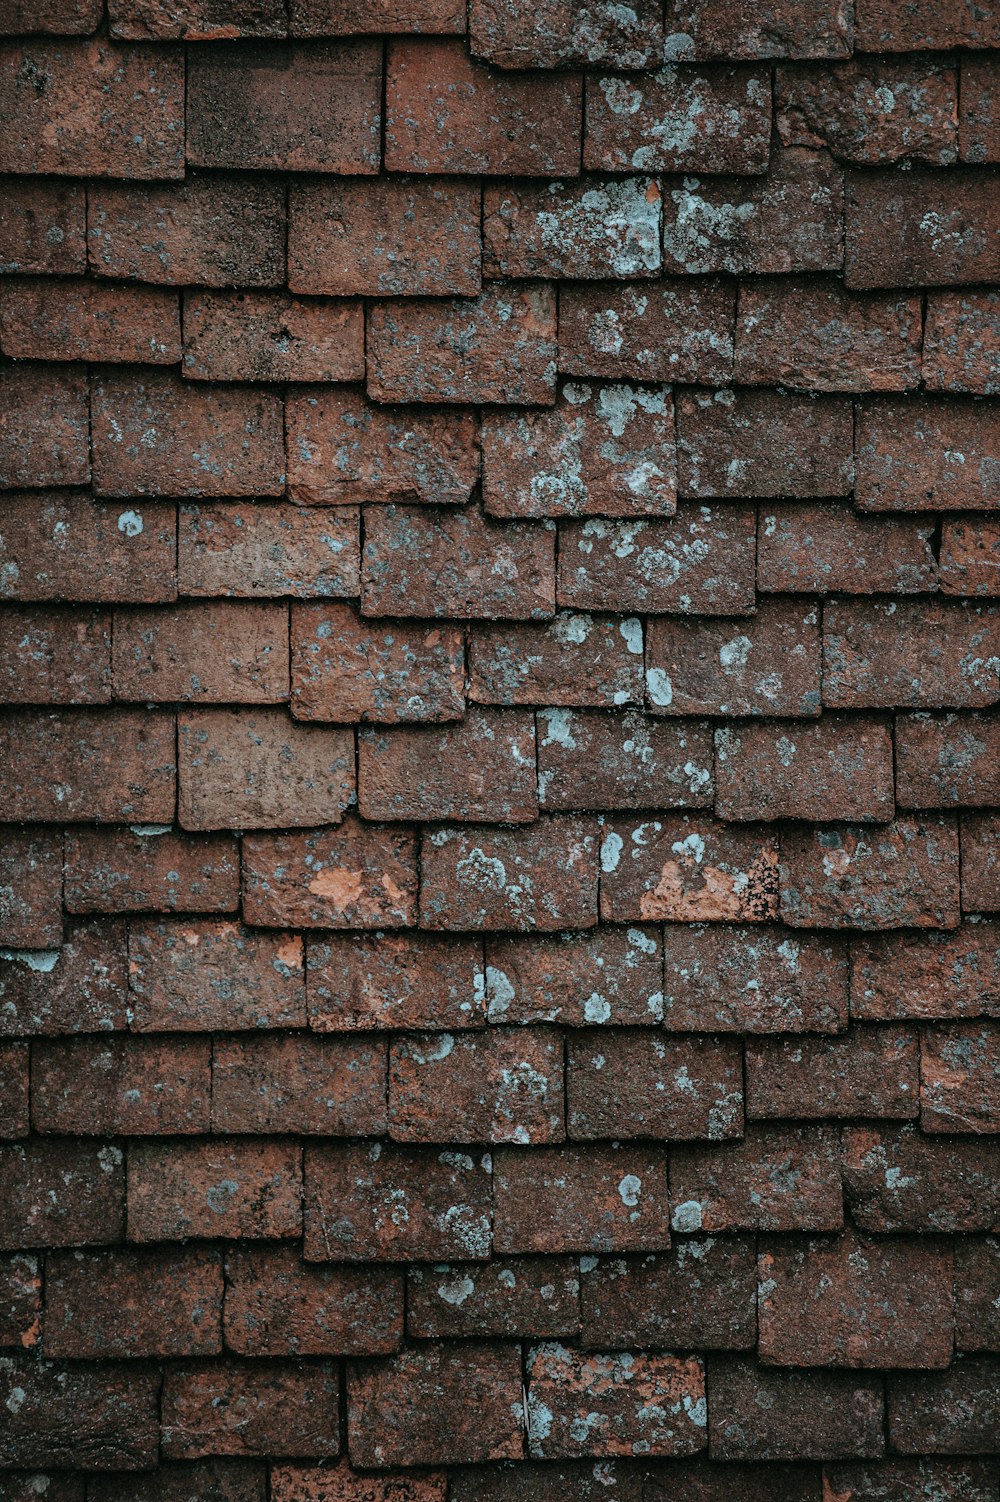 Photographie en gros plan de briques de béton brun et gris